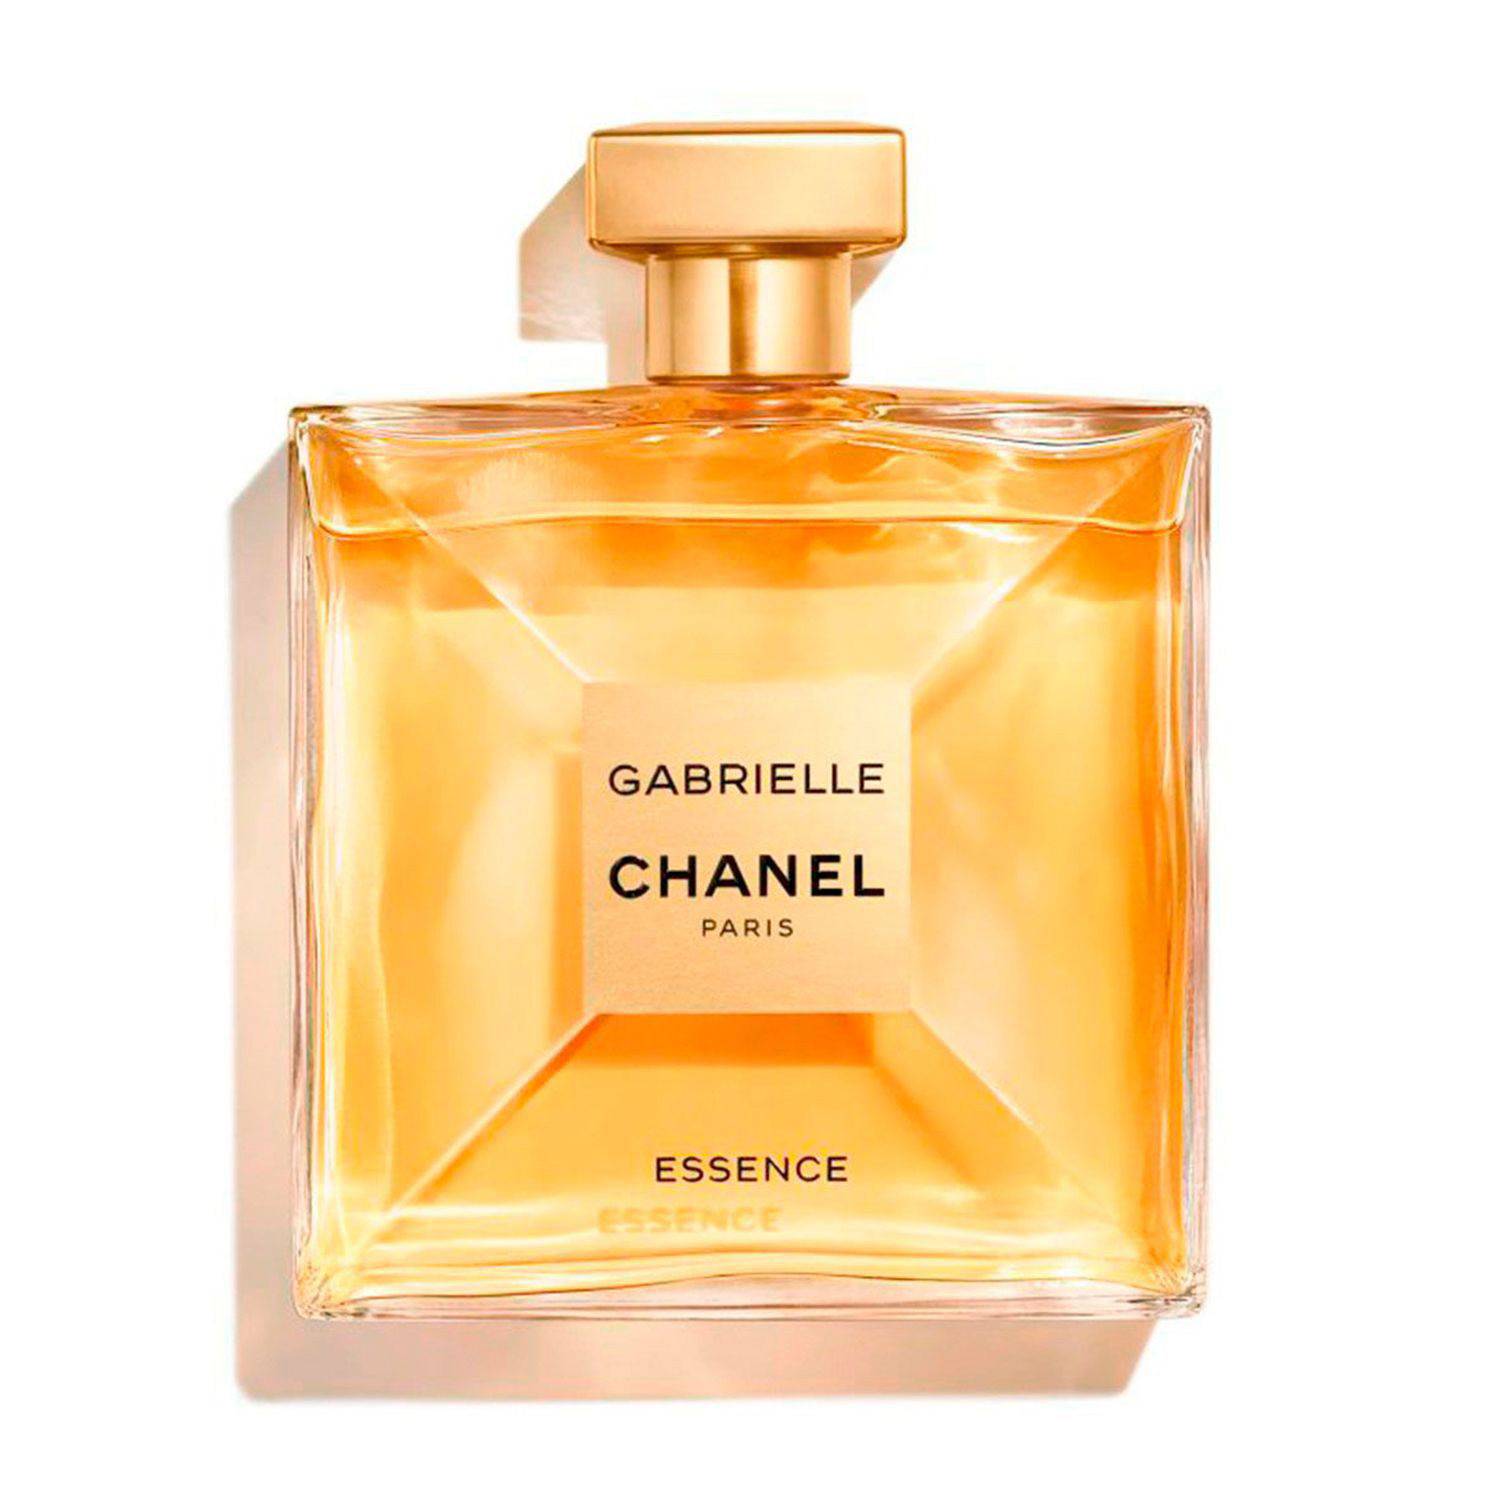 GABRIELLE CHANEL Essence Eau de Parfum Vaporizador CHANEL